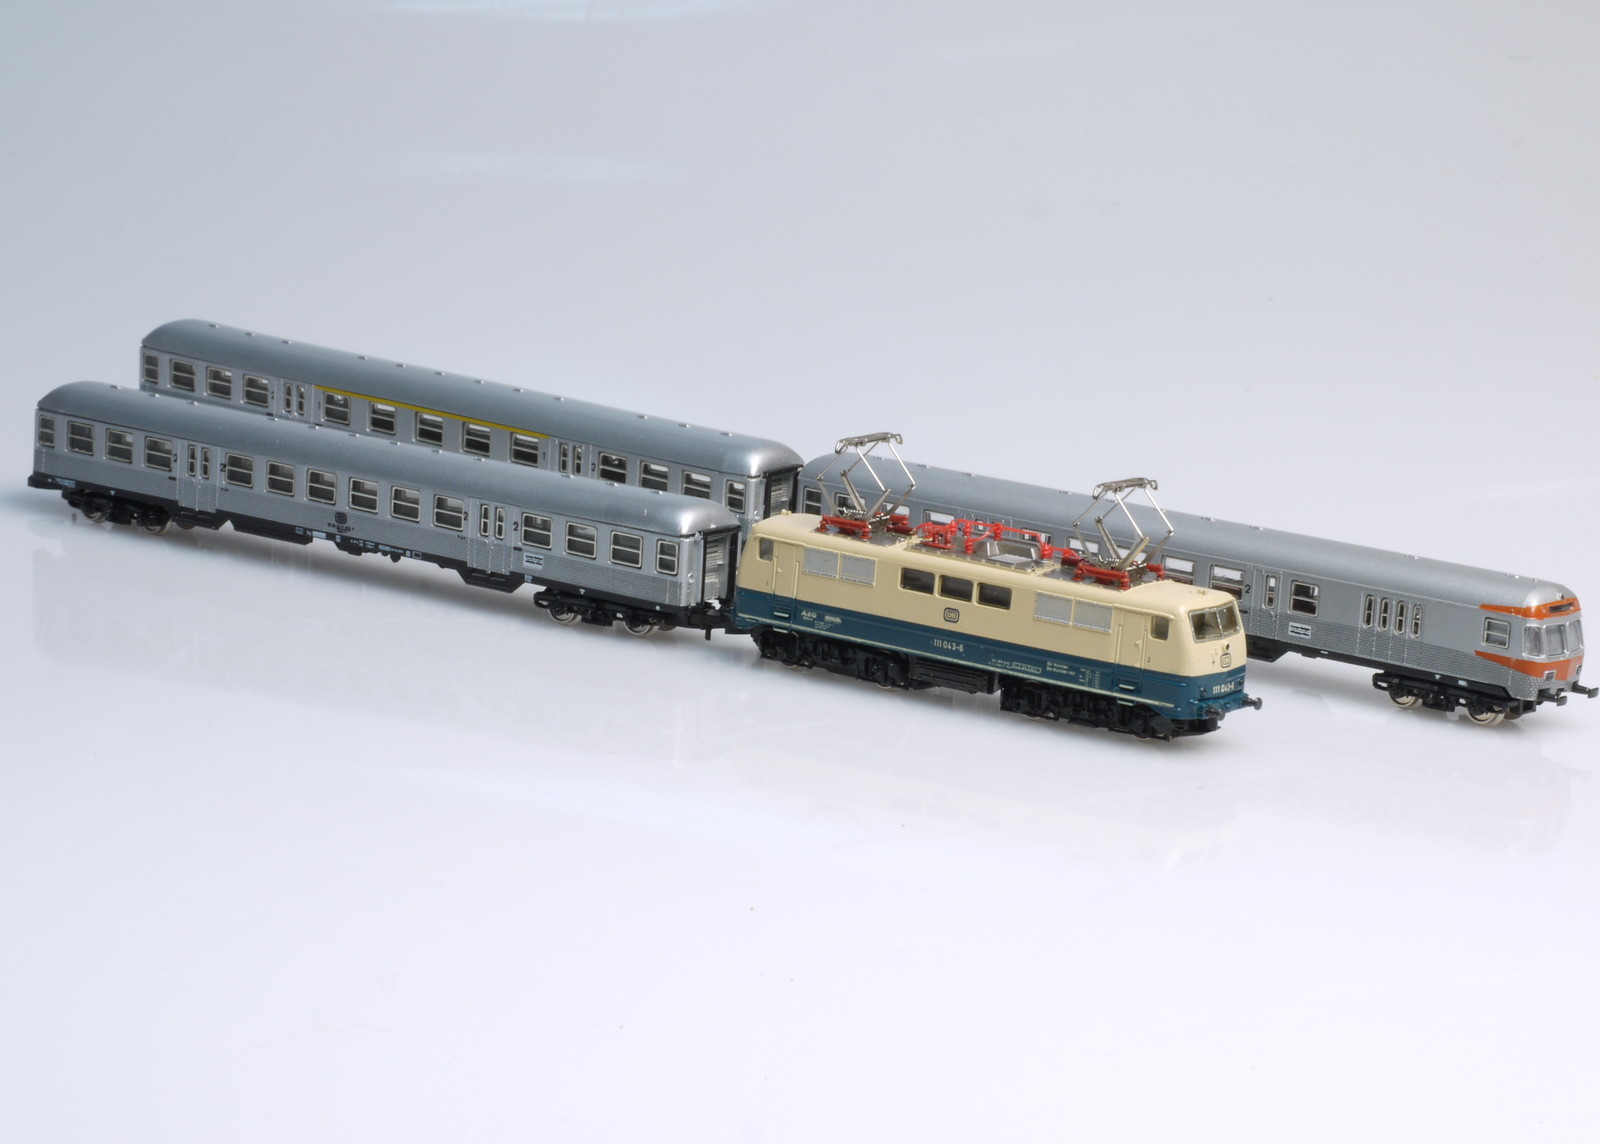 marklin mini-club メルクリン ミニクラブ 鉄道模型 8158 - 鉄道模型